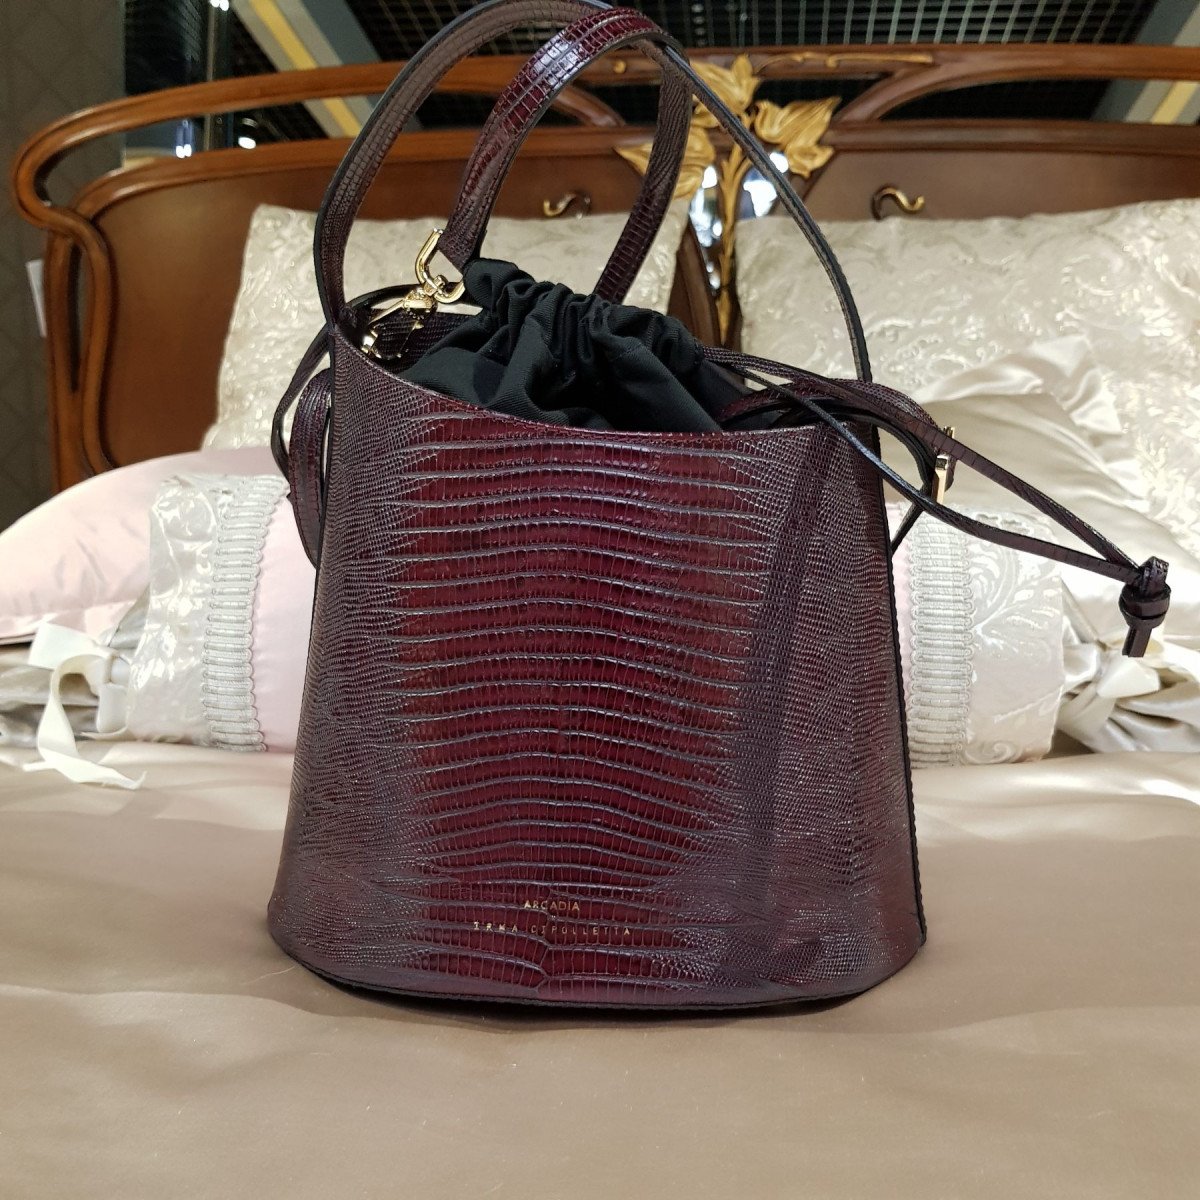 Итальянская женская сумка Arcadia 4773 tex rubino из натуральной кожи